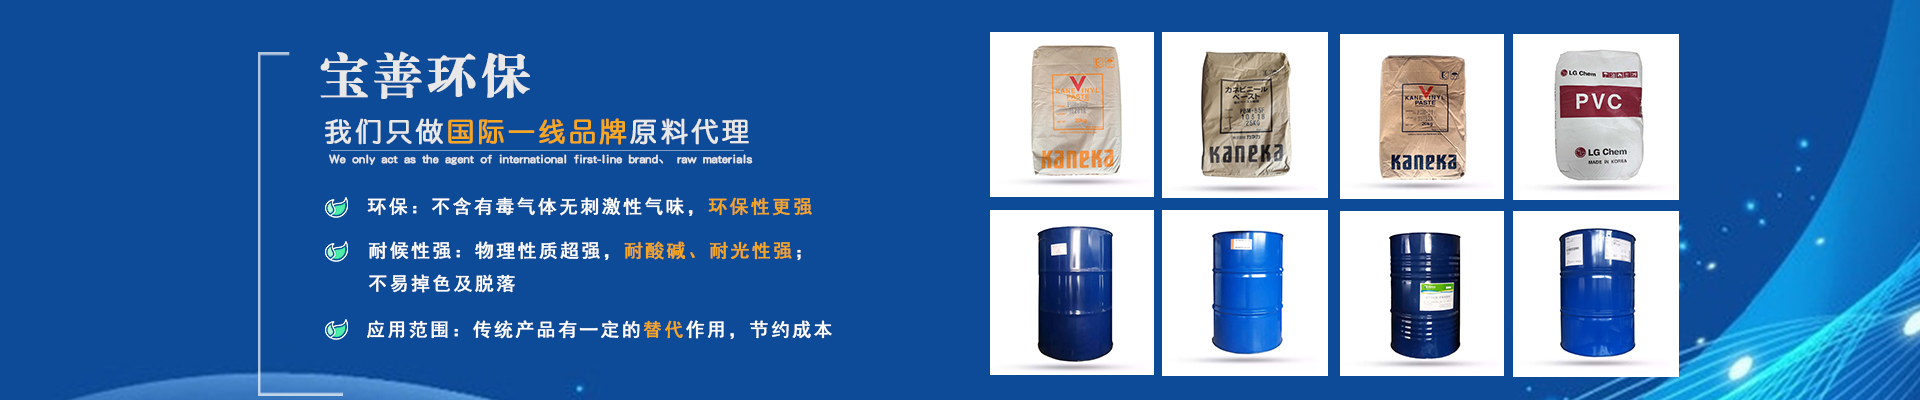 广东宝善贸易有限公司:PVC降粘剂TXIB